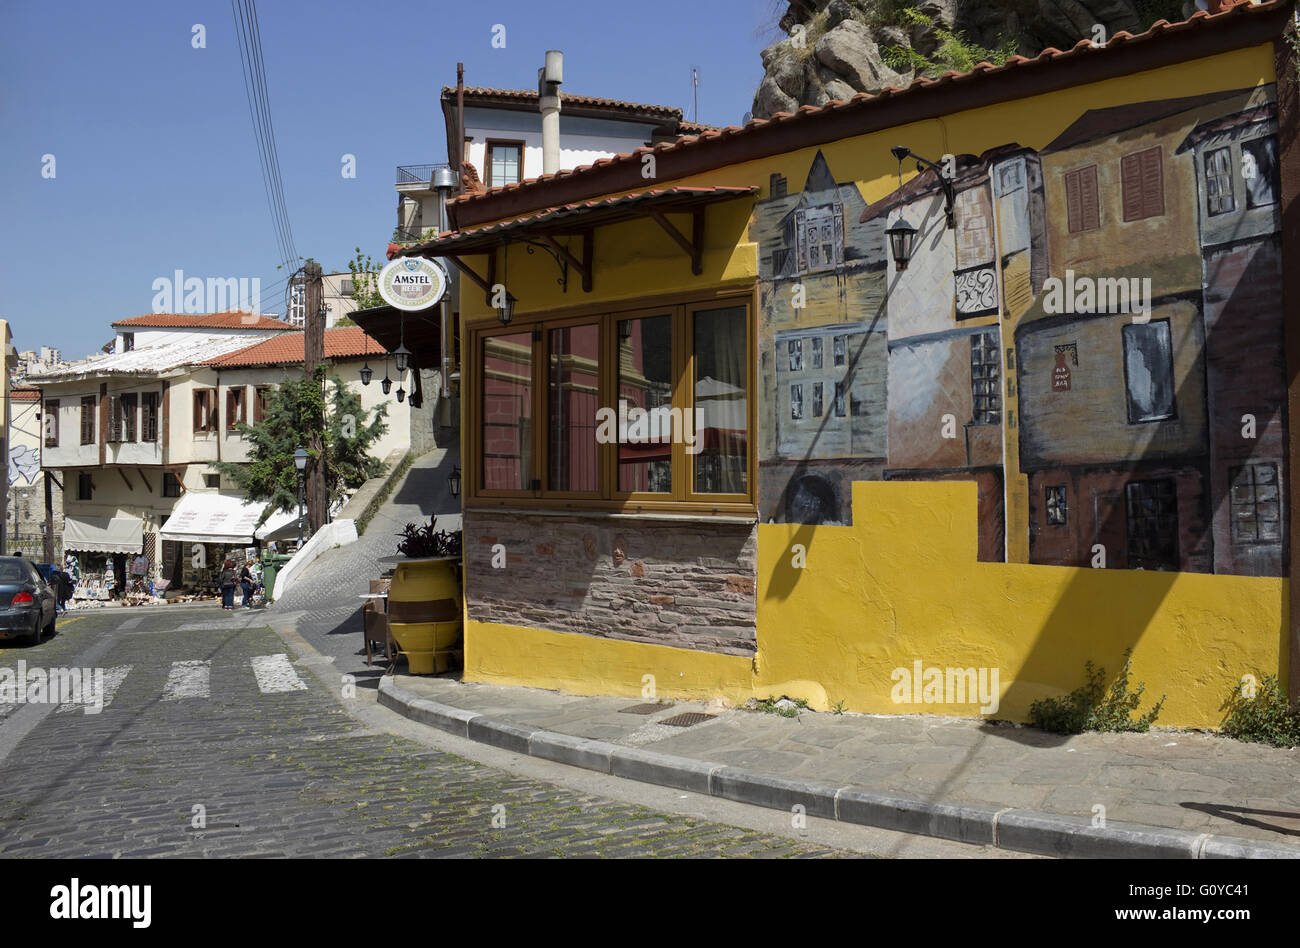 Poulidou street legno Rock cafe bar shop graffiti & tradizionale architettura degli edifici. Distretto di Panaghia, Kavala centro città. Foto Stock